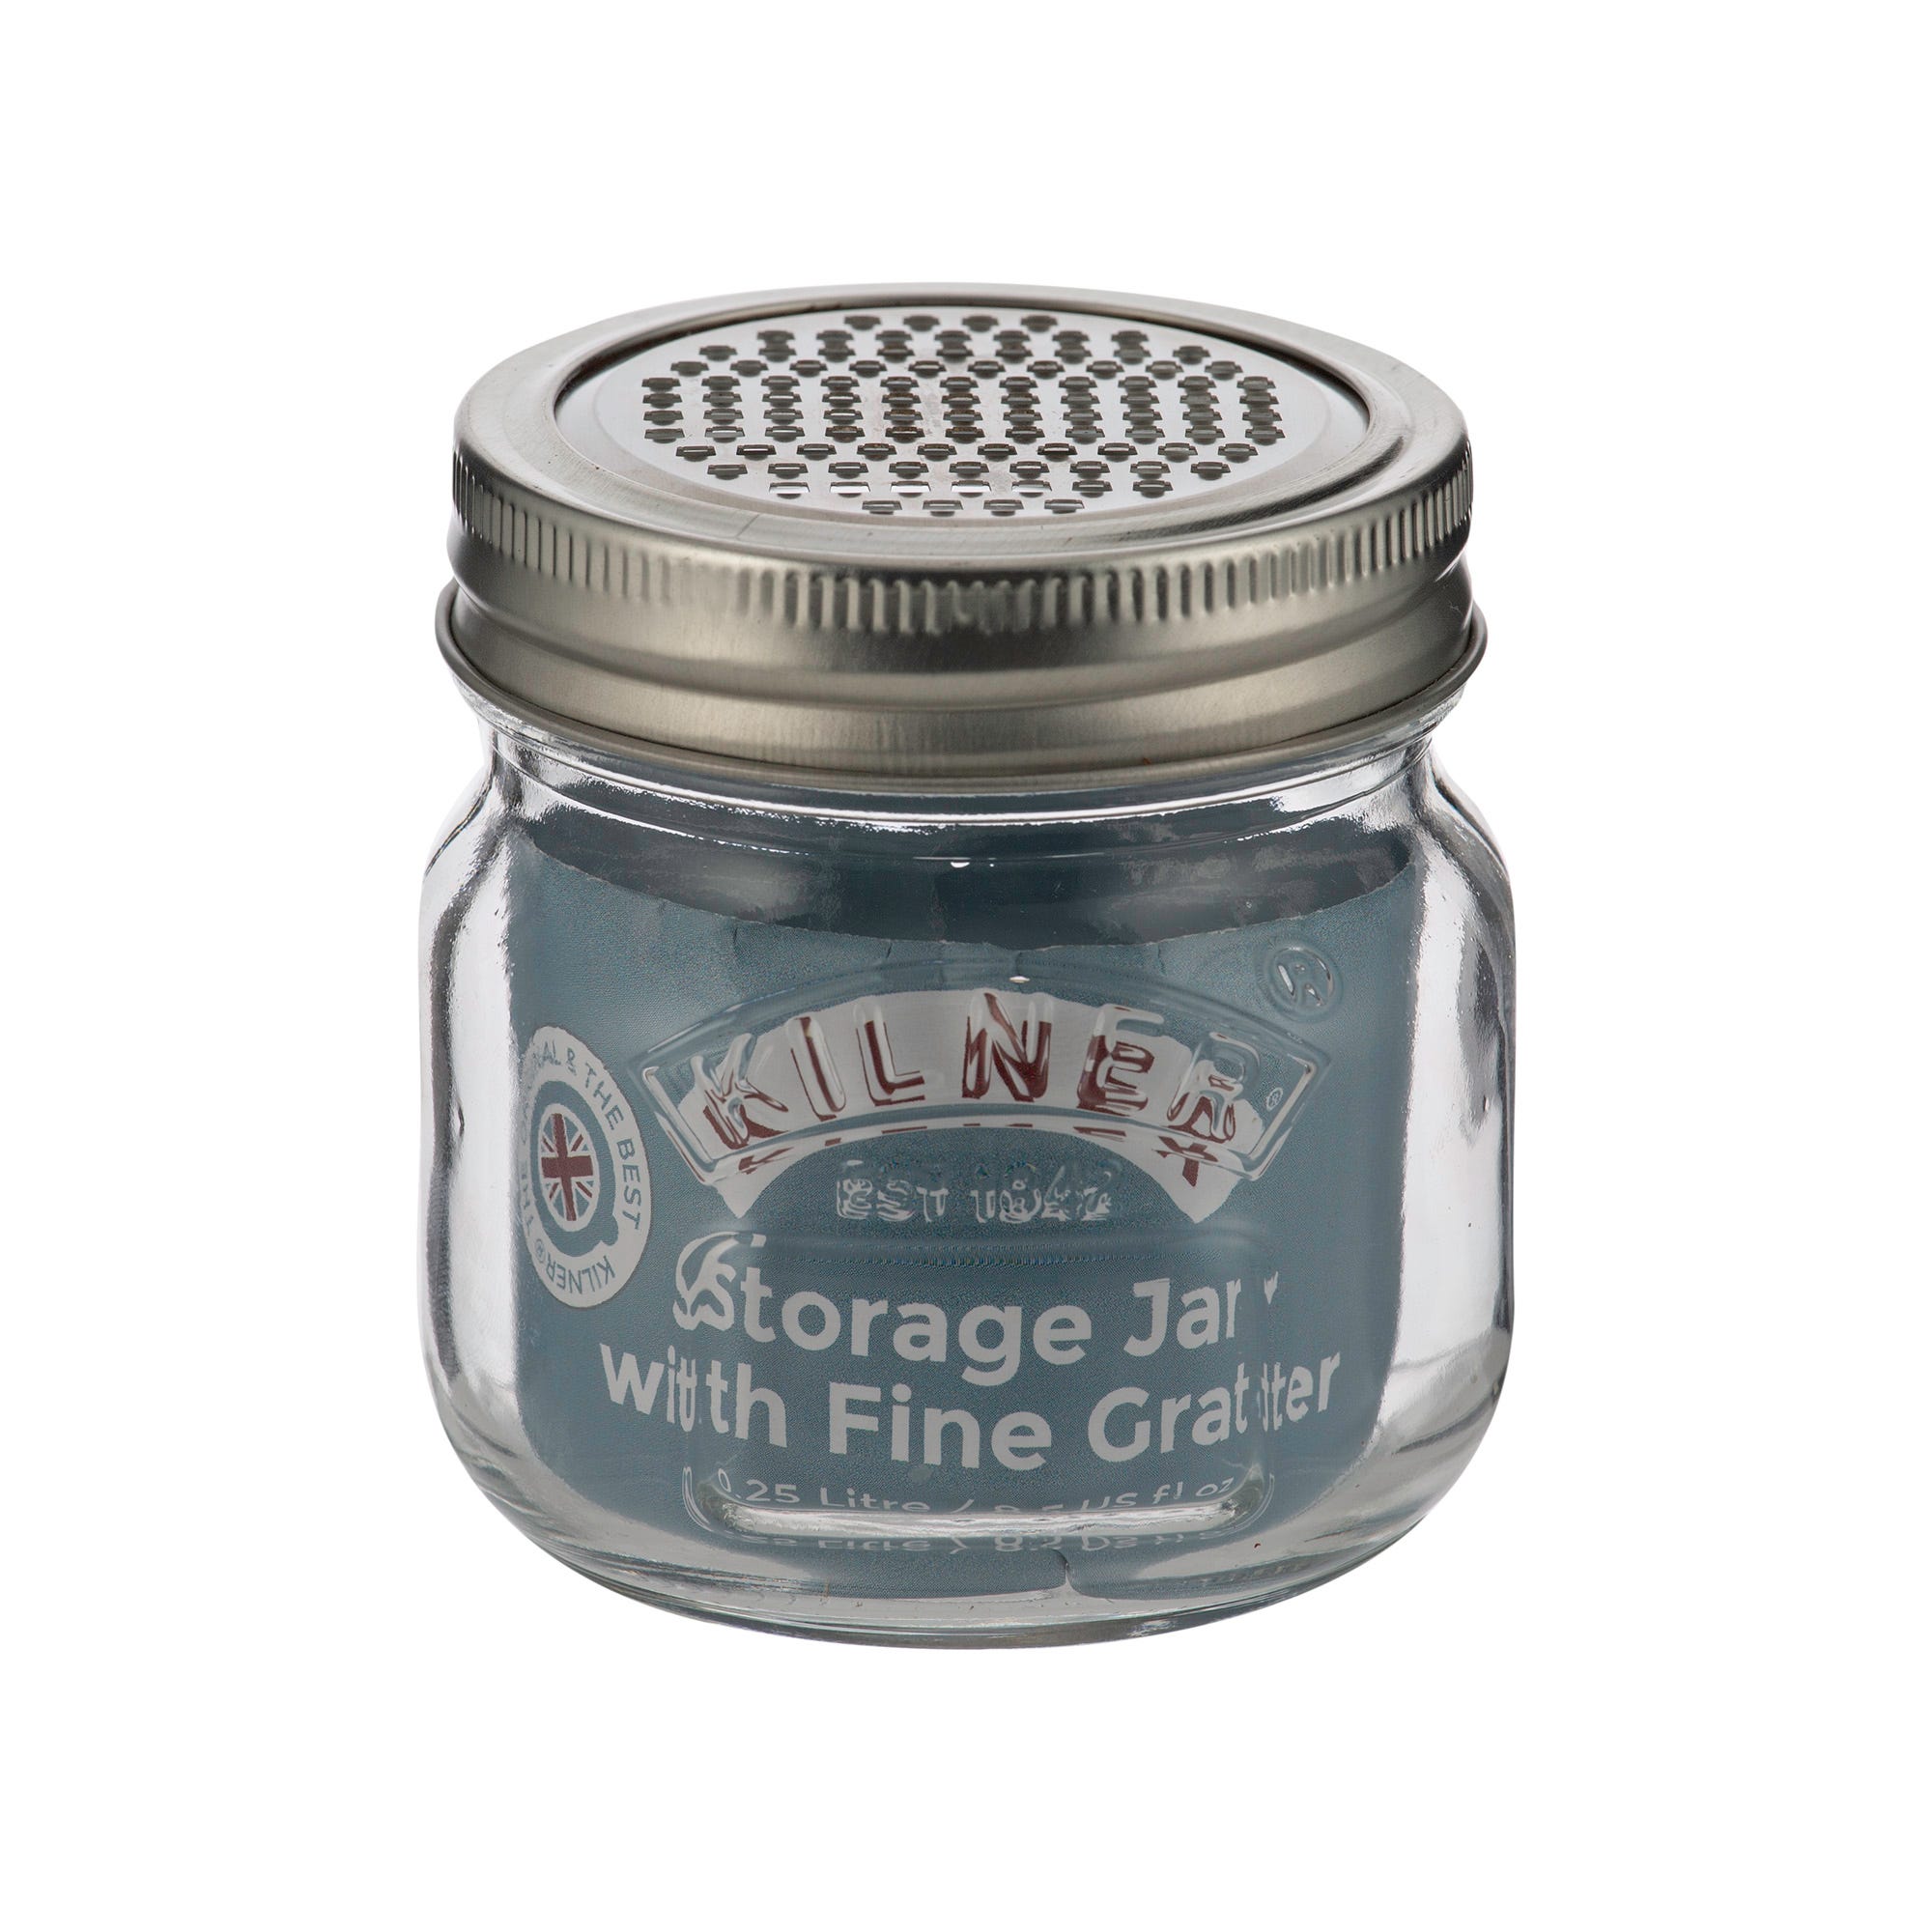 Storage Jar with Fine Grater